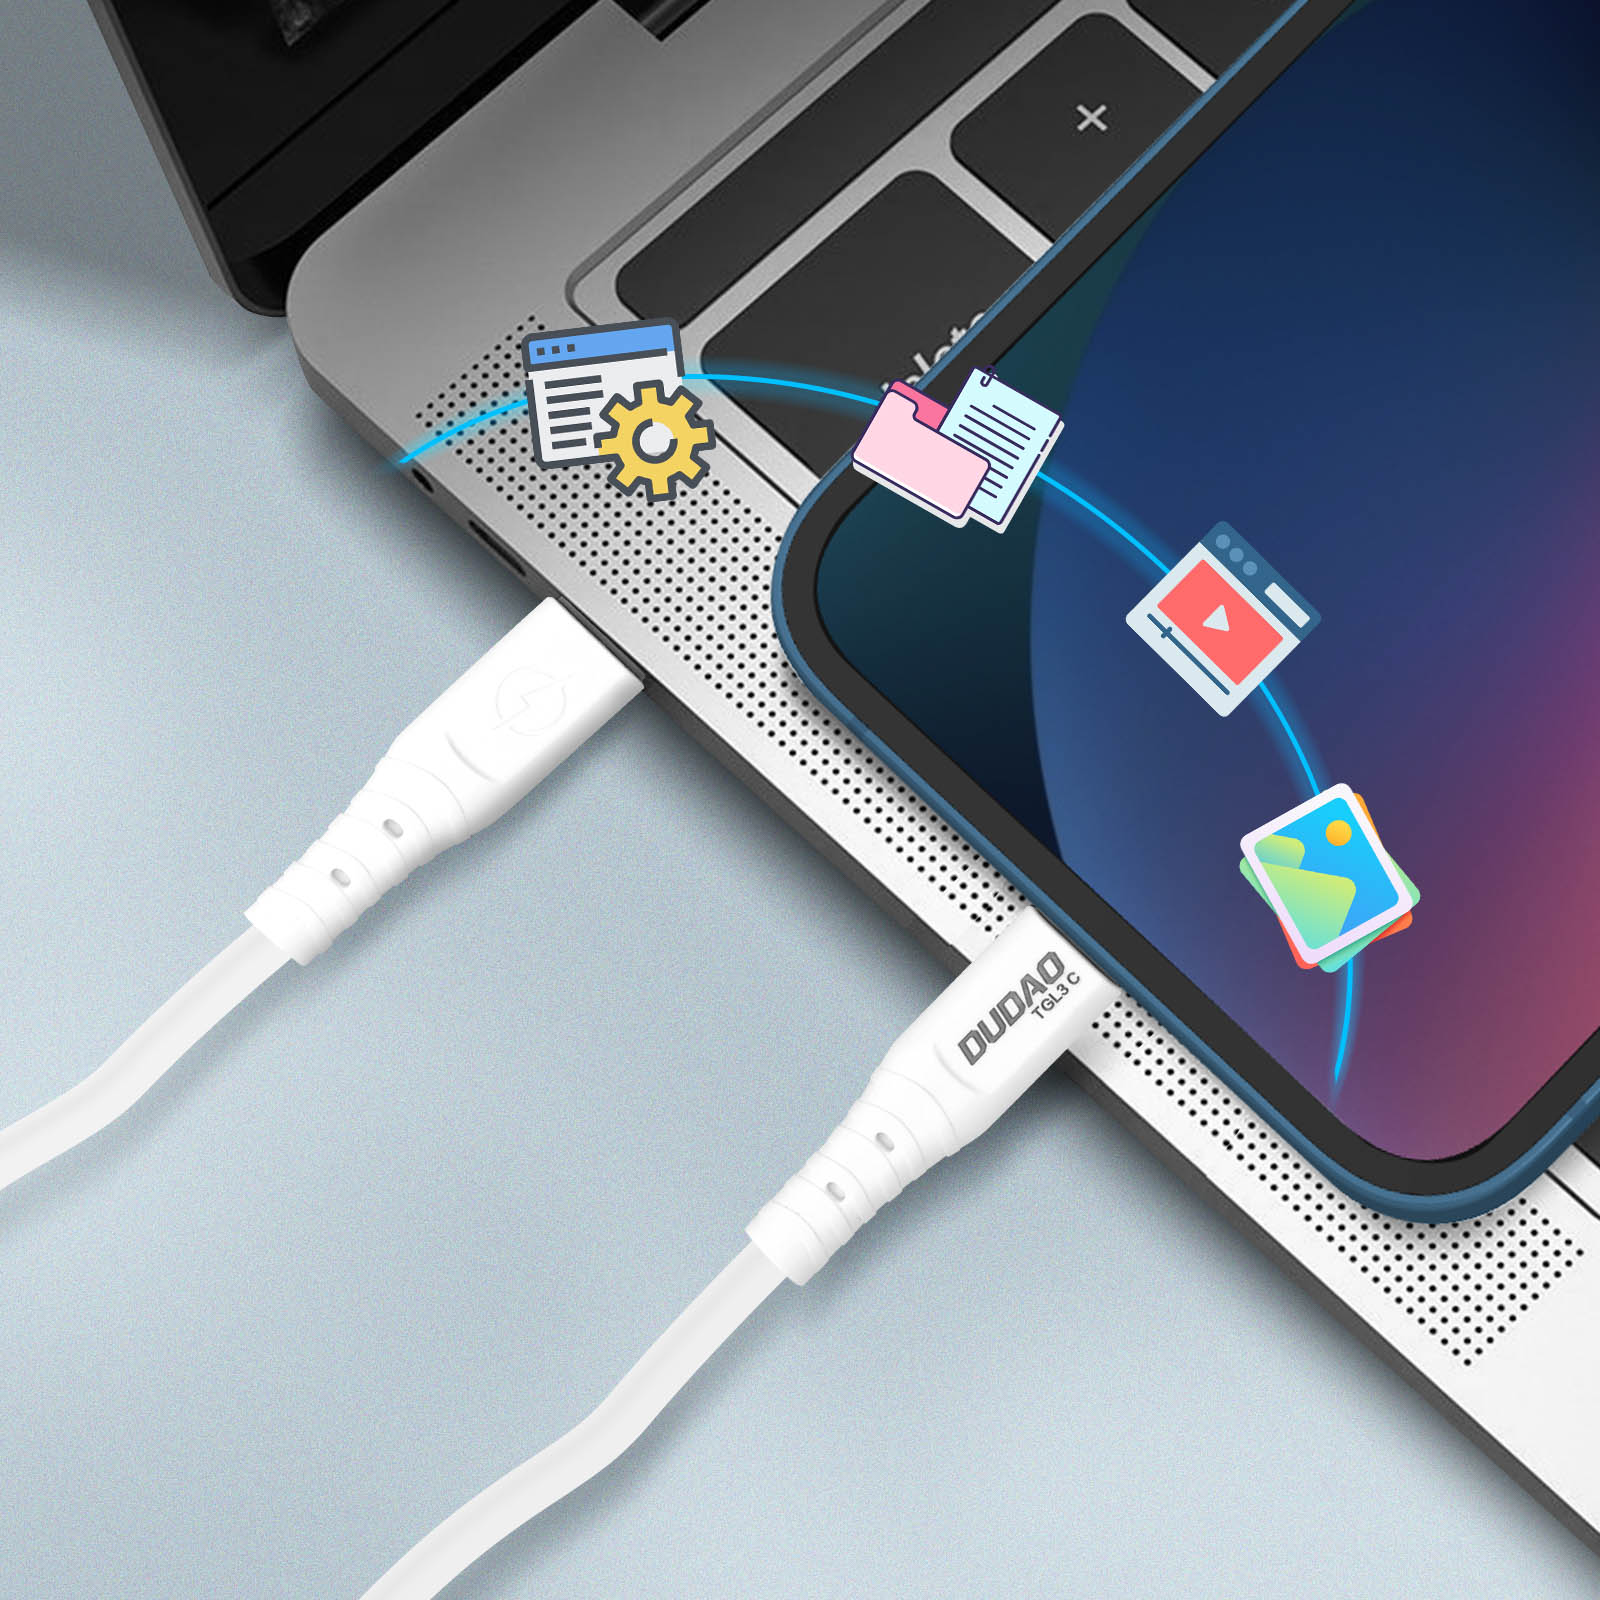 65W DUDAO für und USB-Kabel USB-C Kabel iPad iPhone